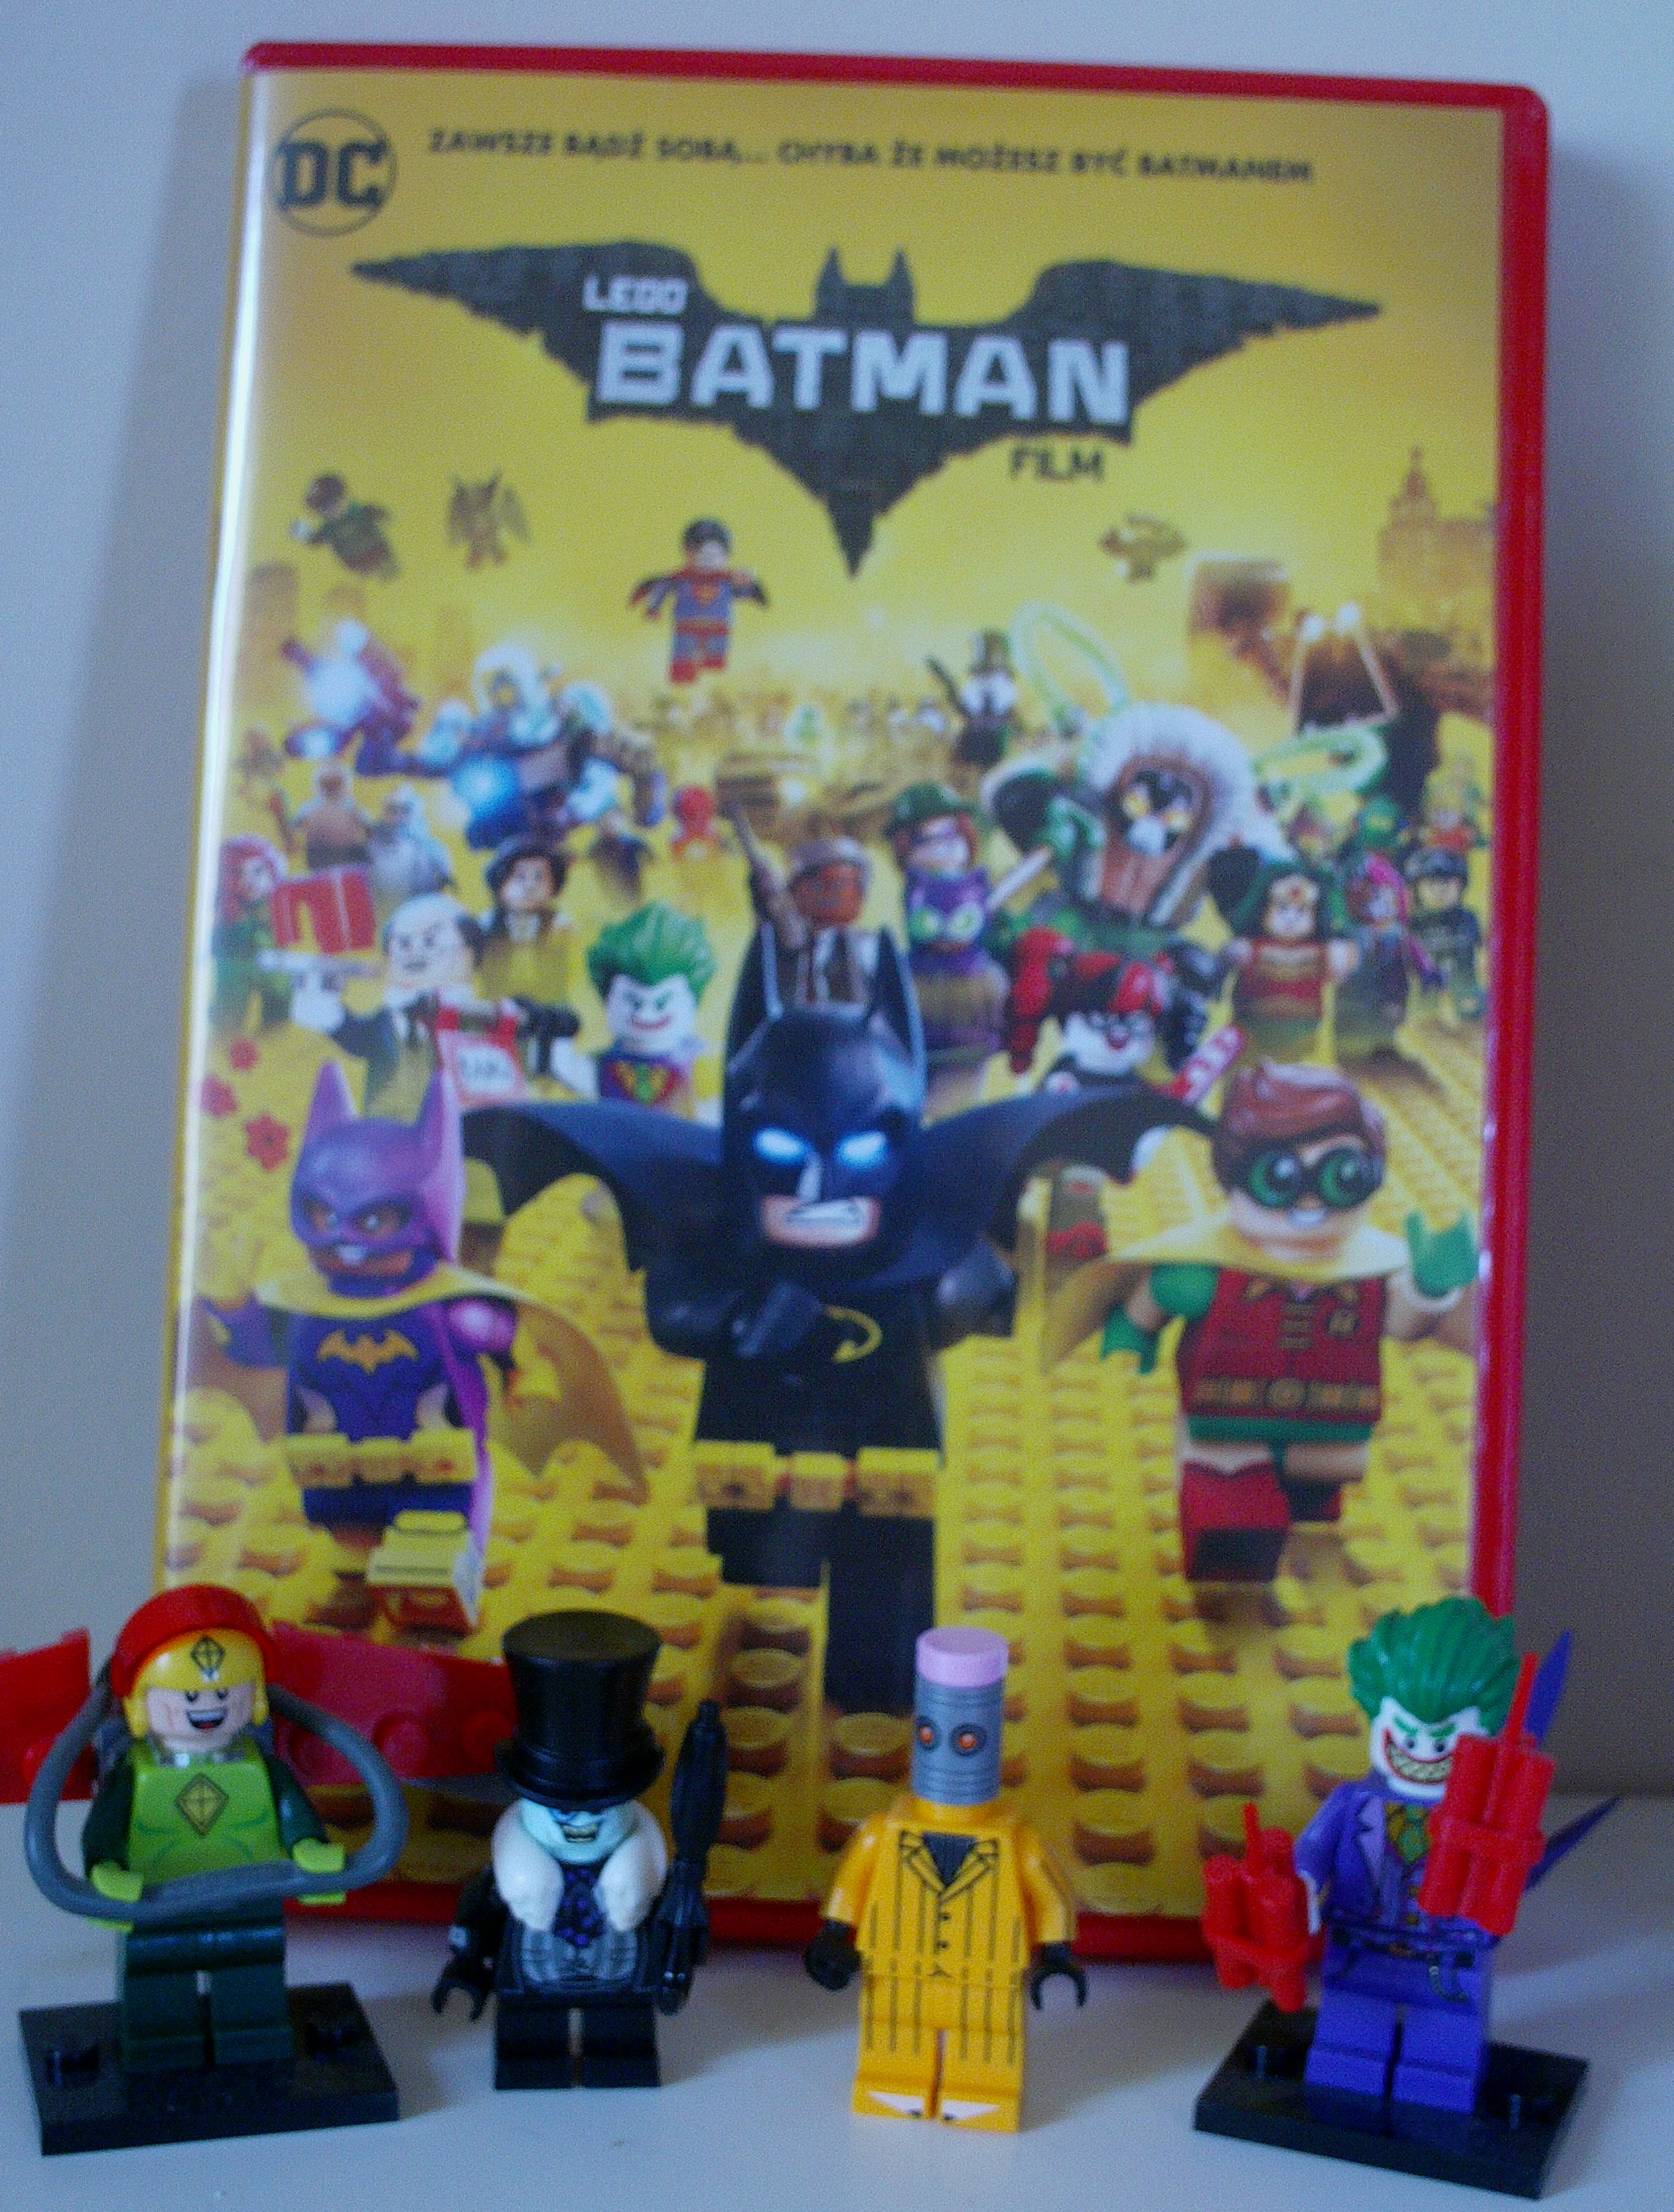 Clock Poznaj WSZYSTKICH przeciwników Mrocznego Rycerza z „Lego® Batman: Film"